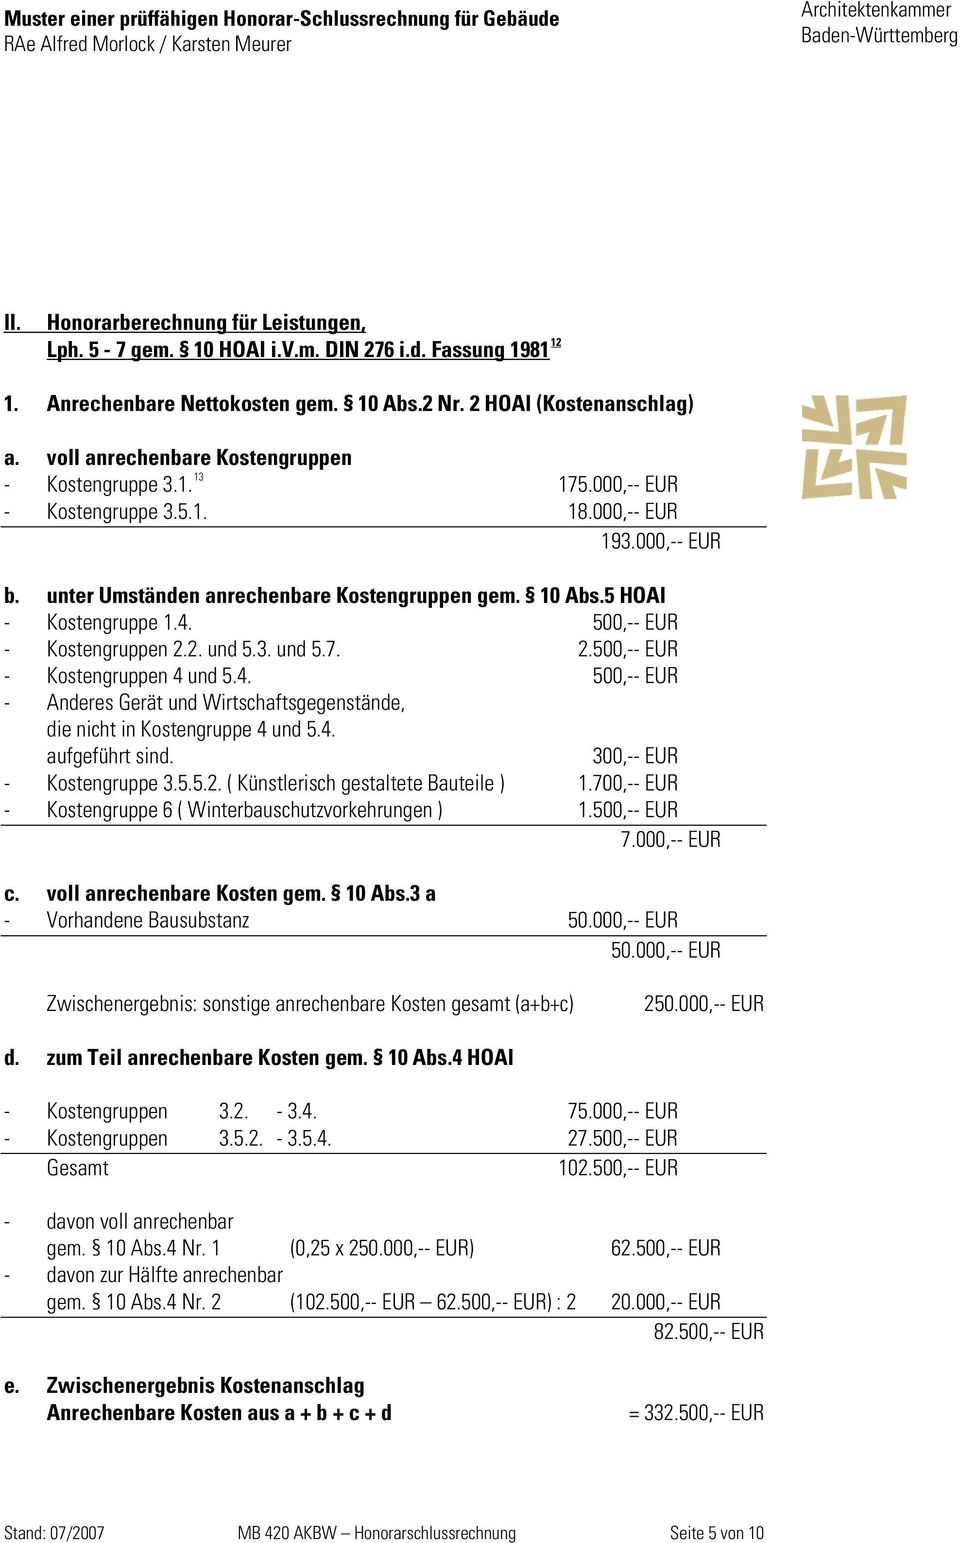 5 HOAI - Kostengruppe 1.4. 500,-- EUR - Kostengruppen 2.2. und 5.3. und 5.7. 2.500,-- EUR - Kostengruppen 4 und 5.4. 500,-- EUR - Anderes Gerät und Wirtschaftsgegenstände, die nicht in Kostengruppe 4 und 5.